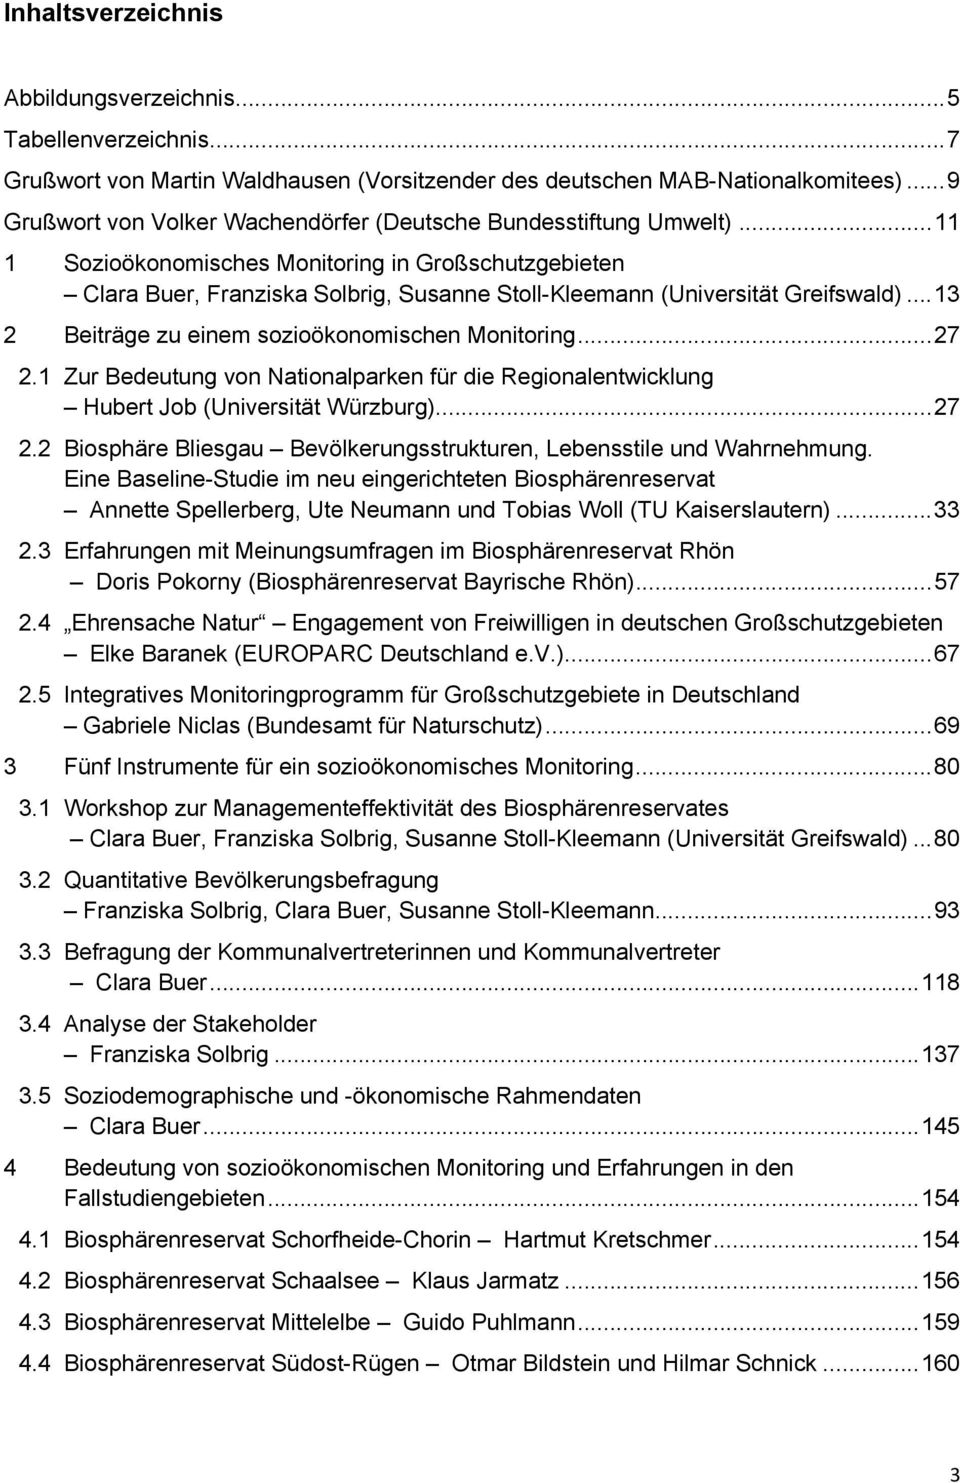 .. 11 1 Sozioökonomisches Monitoring in Großschutzgebieten Clara Buer, Franziska Solbrig, Susanne Stoll-Kleemann (Universität Greifswald)... 13 2 Beiträge zu einem sozioökonomischen Monitoring... 27 2.